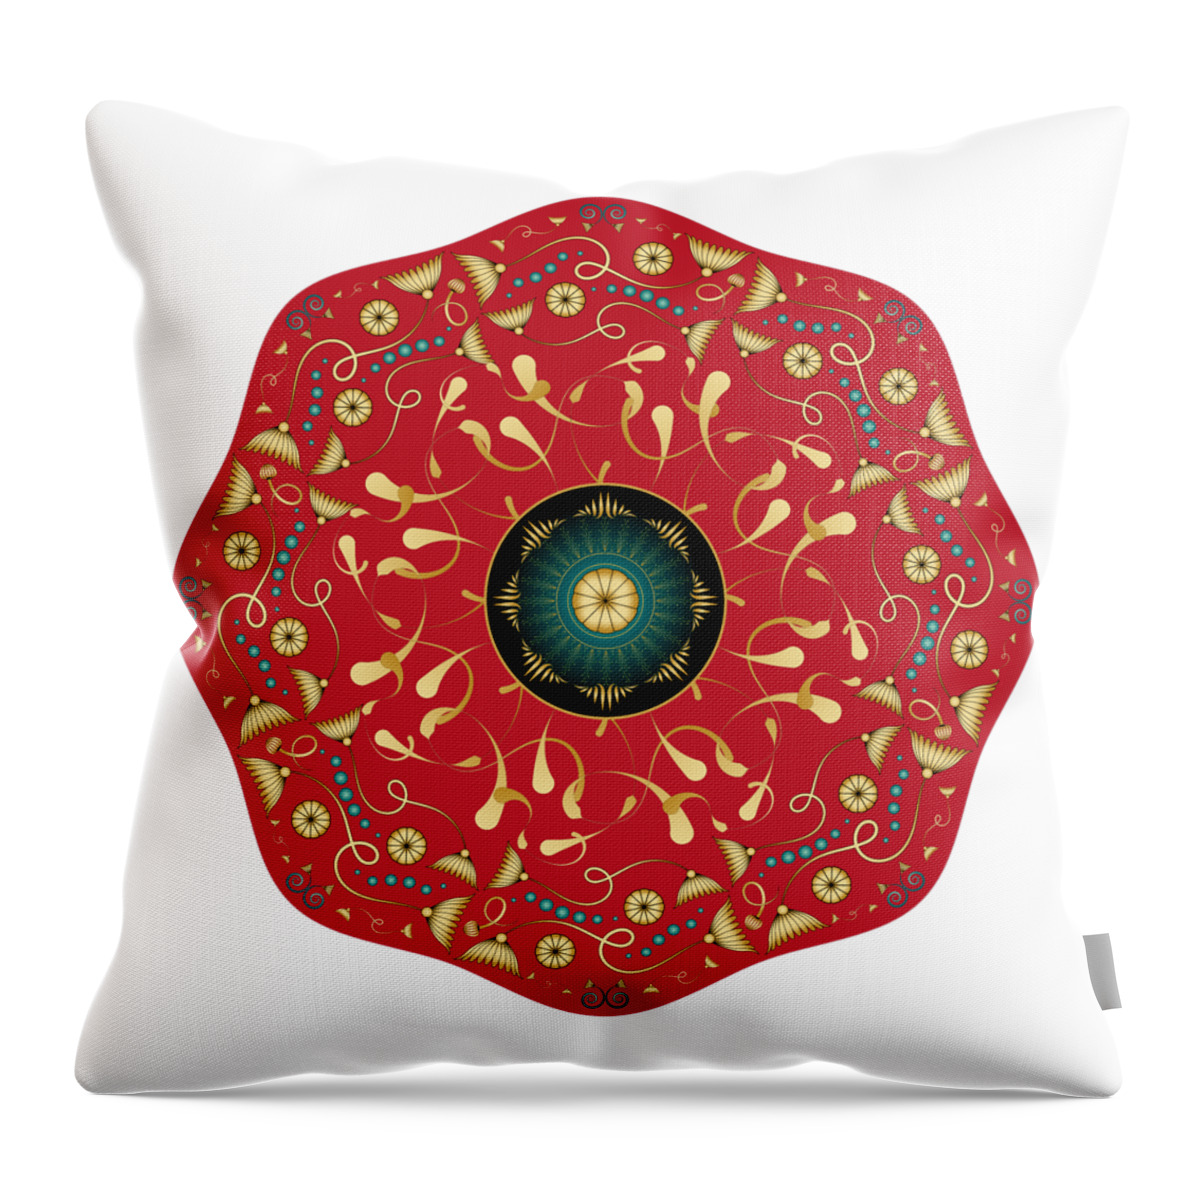 Mandala Throw Pillow featuring the digital art Circularium No. 2736 by Alan Bennington